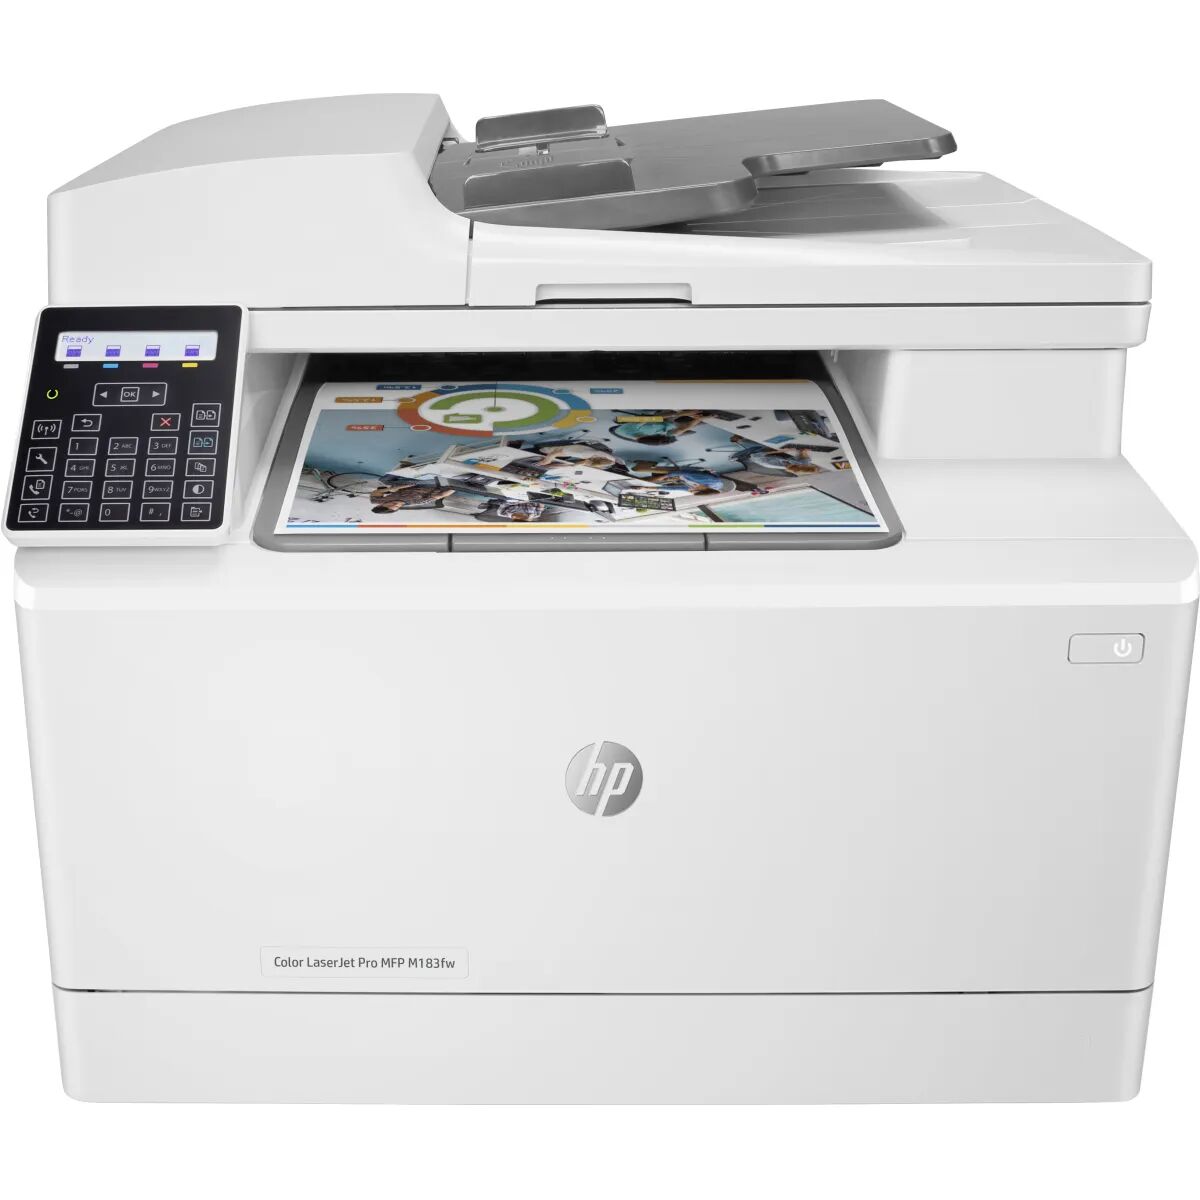 HP Color LaserJet Pro Stampante multifunzione M183fw, Colore, per Stampa, copia, scansione, fax, ADF da 35 fogli; Risparmio energetico; Funzionalità di sicurezza avanzate; Wi-Fi dual band [7KW56A#B19]